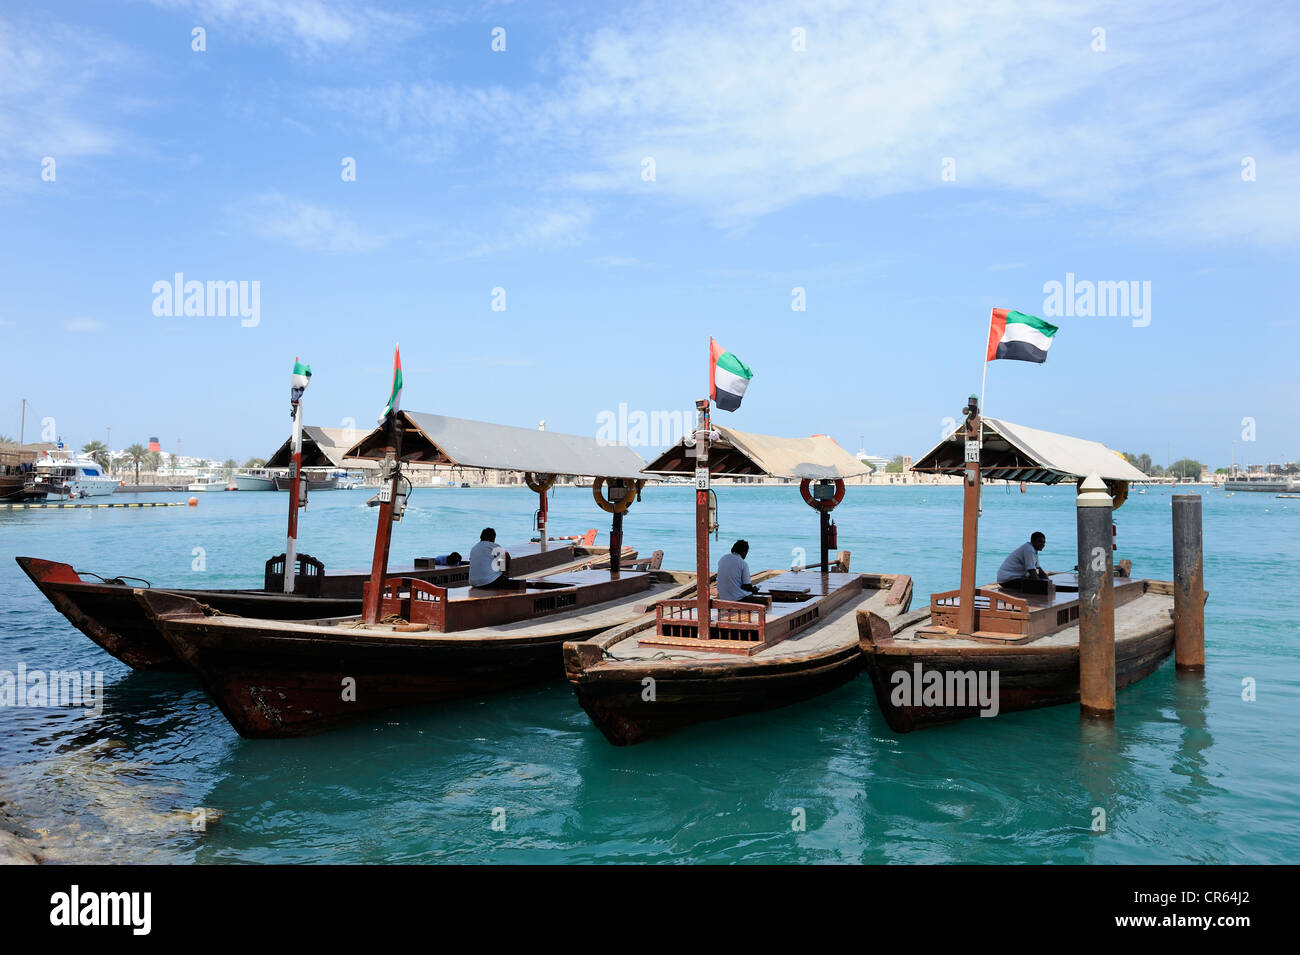 Les bateaux-taxis, Abra, dhow sur la Crique de Dubaï, Dubaï, Émirats arabes unis, Moyen Orient Banque D'Images